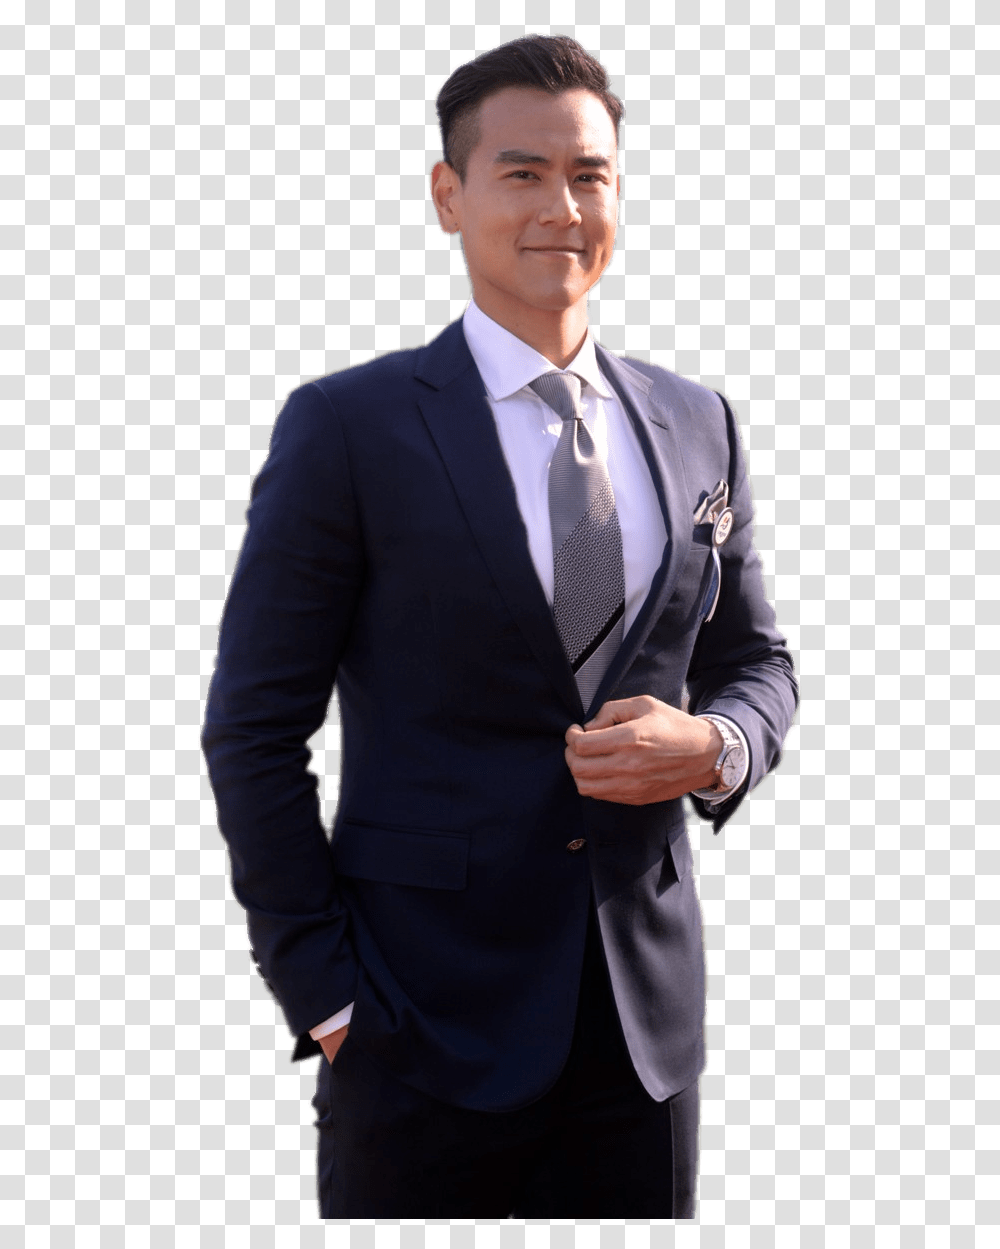 Eddie Peng Wearing Suit Clip Arts Tuxedo, Apparel, Tie, Accessories Transparent Png